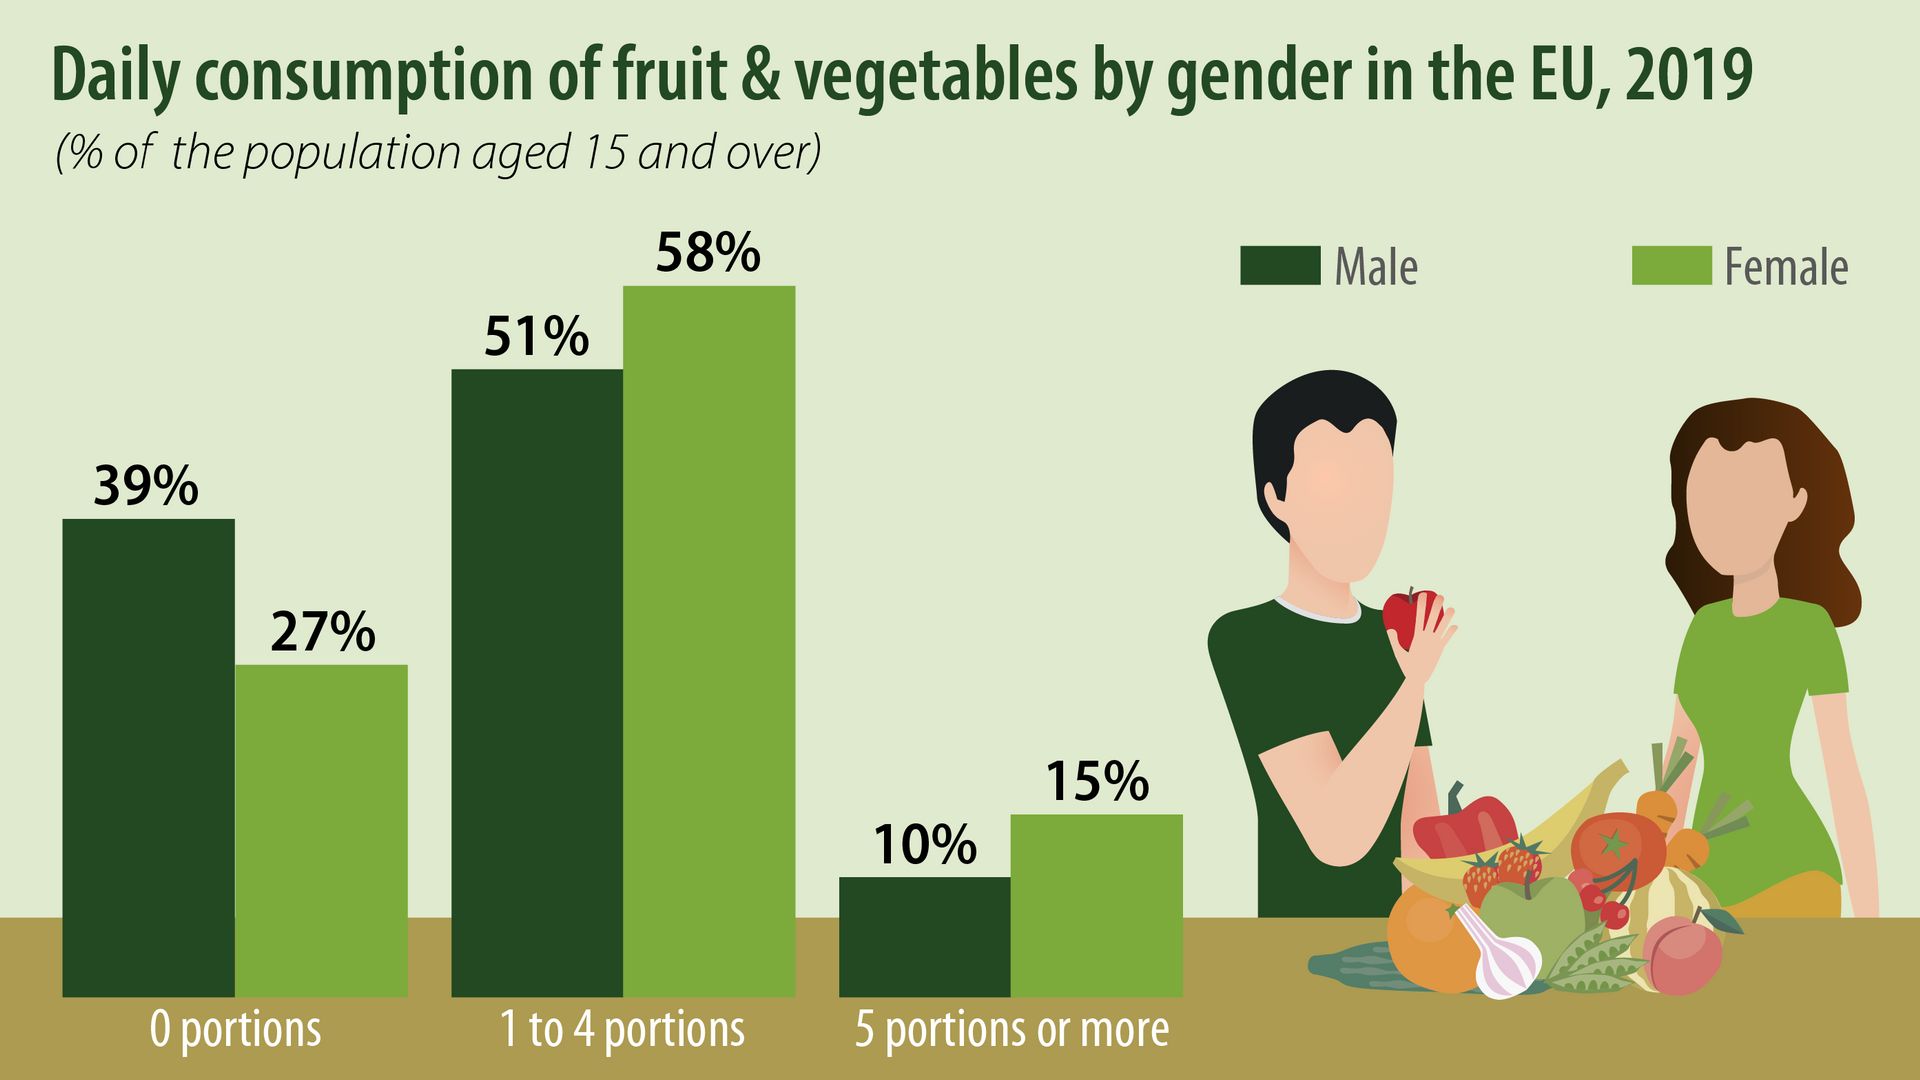 Consommation journalière de cinq portions ou plus de fruits et légumes par genre en 2019 en Europe. (Pourcentage de la population âgée de 15 ans et plus)